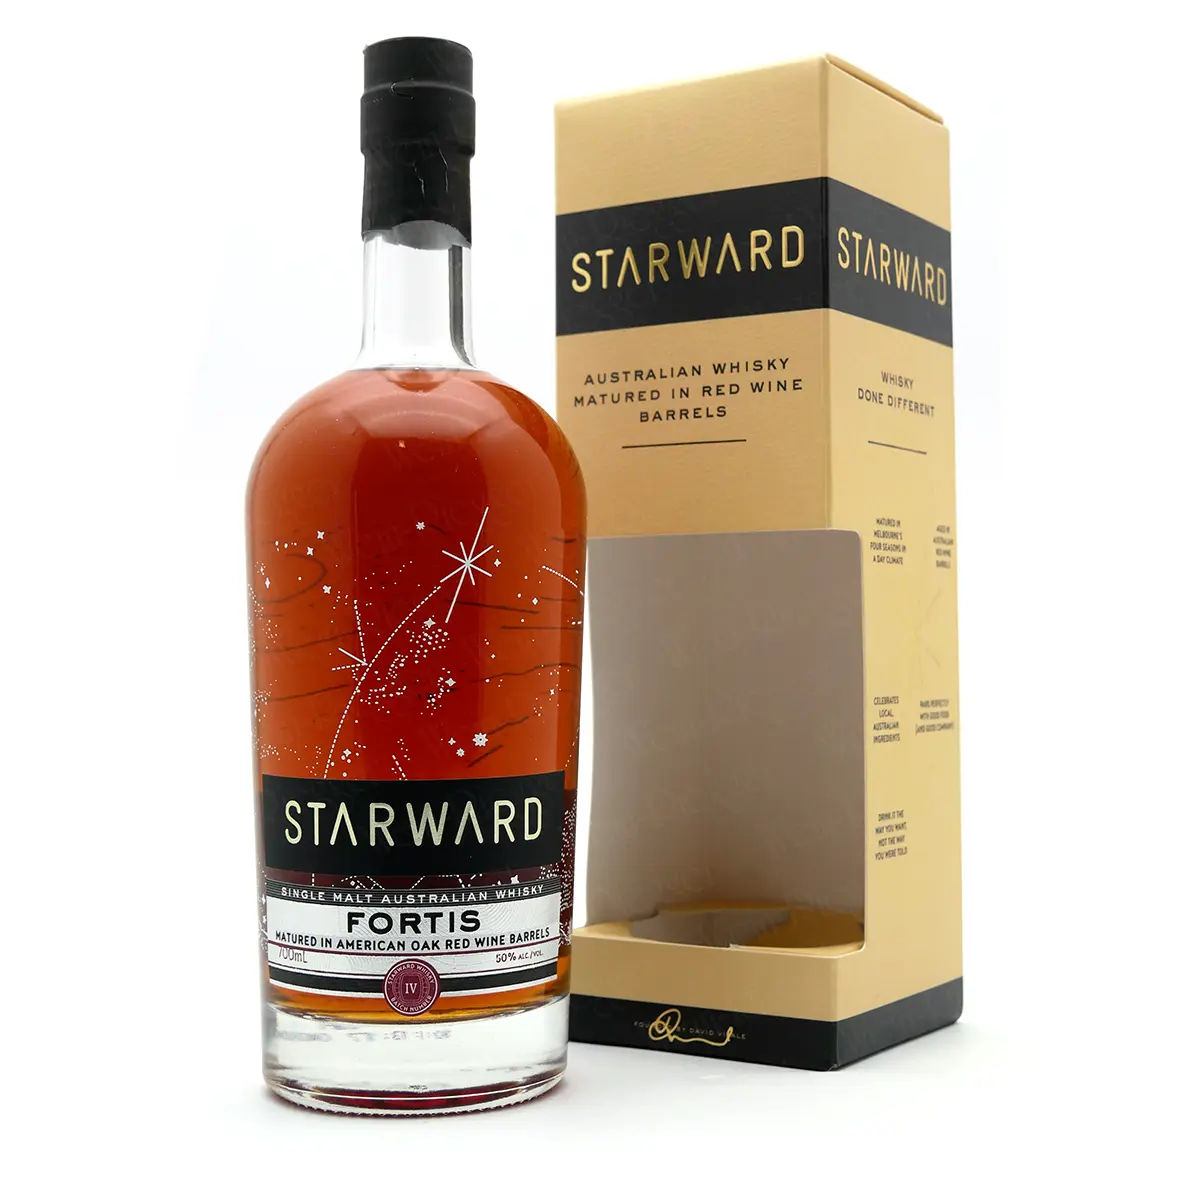 Starward FORTIS Single Malt Australian Whisky